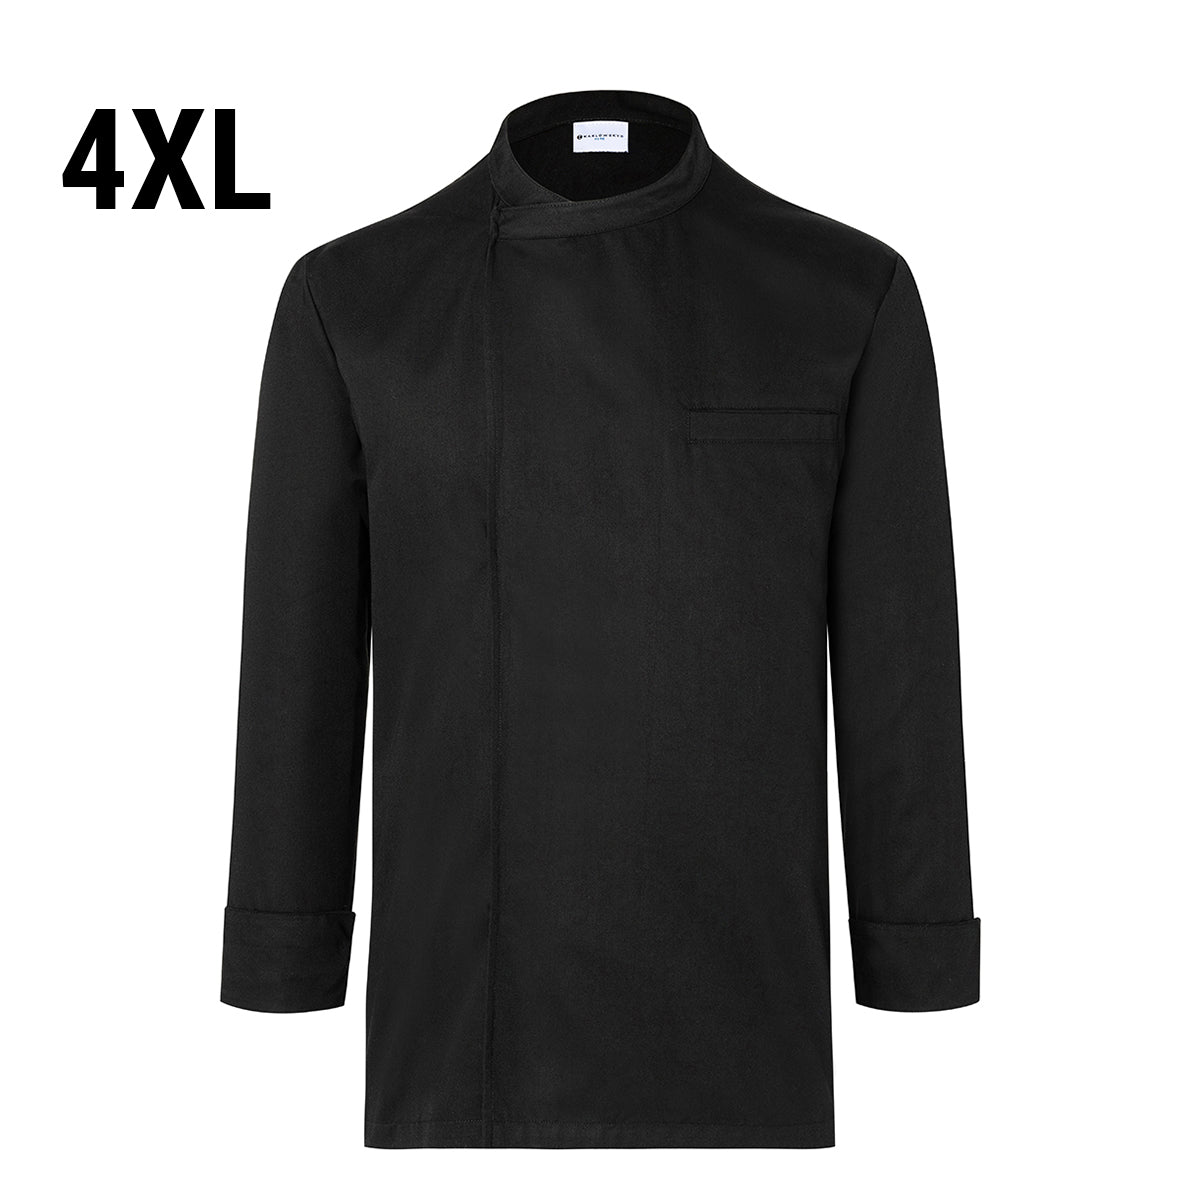 (6 stk) Karlowsky langermet skjorte - svart - str. 4XL